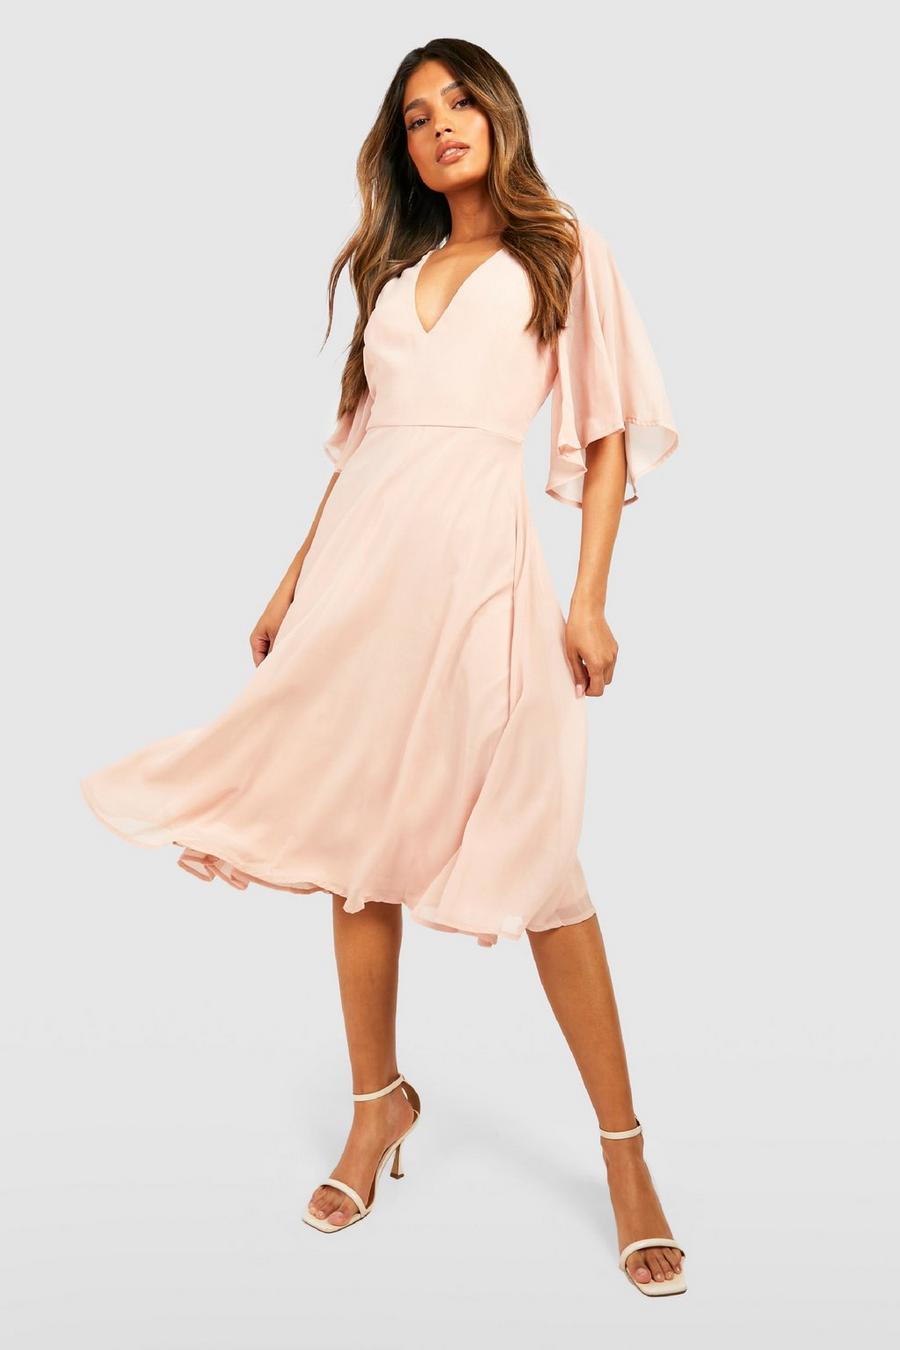 סמוק rosa שמלת מידי סקייטר מבד שיפון לשושבינה עם שרוולי מלאך image number 1